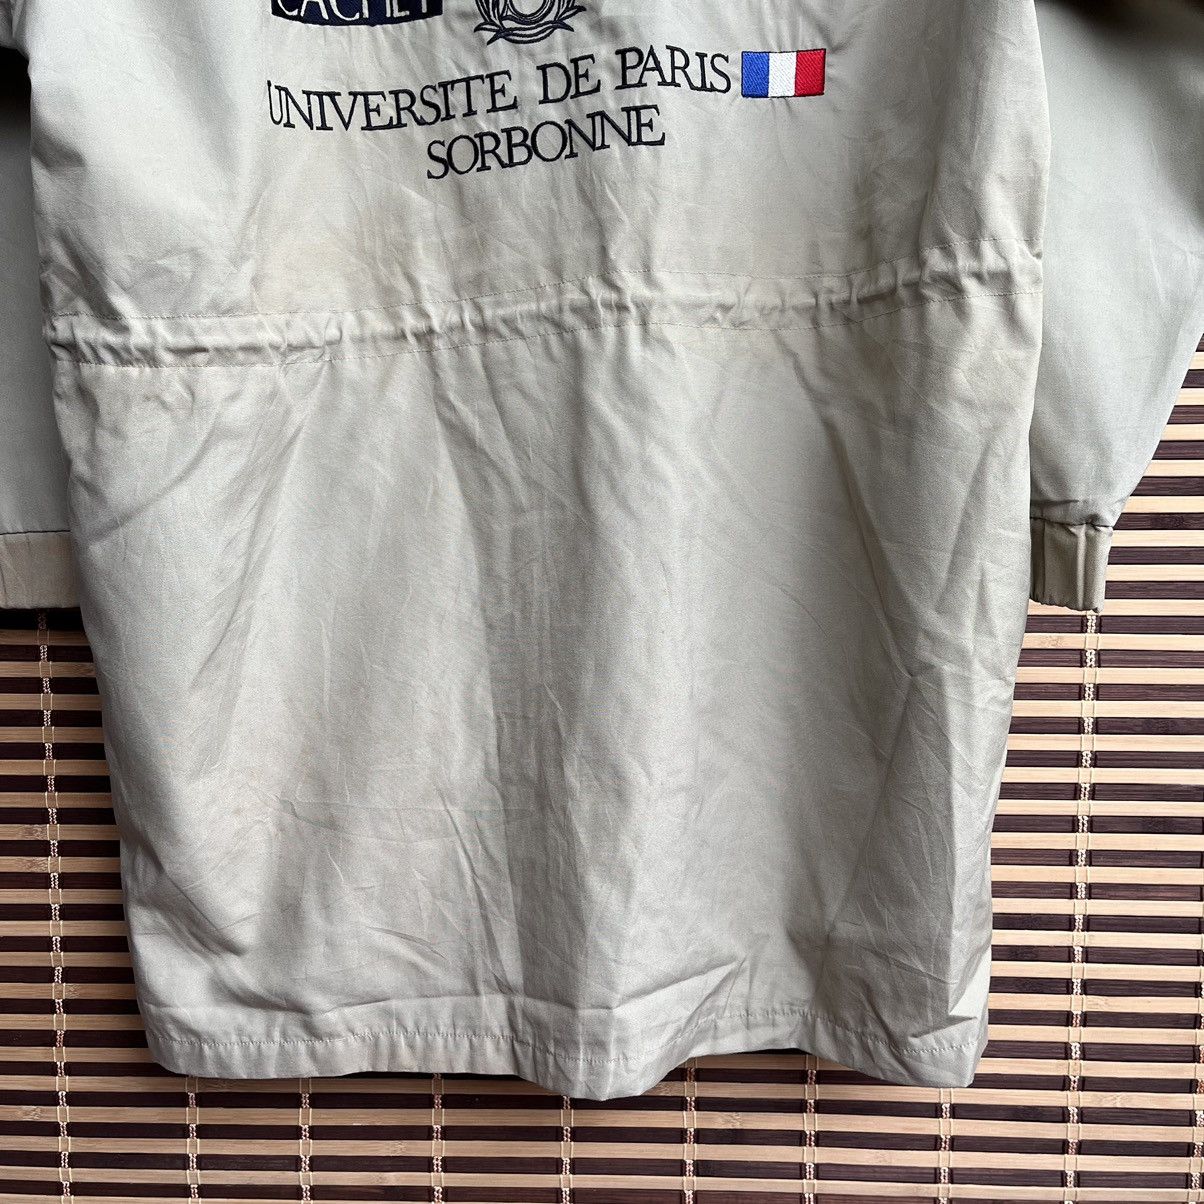 Vintage Celeste Universite De Paris Sorbonne Parka Jacket - 19